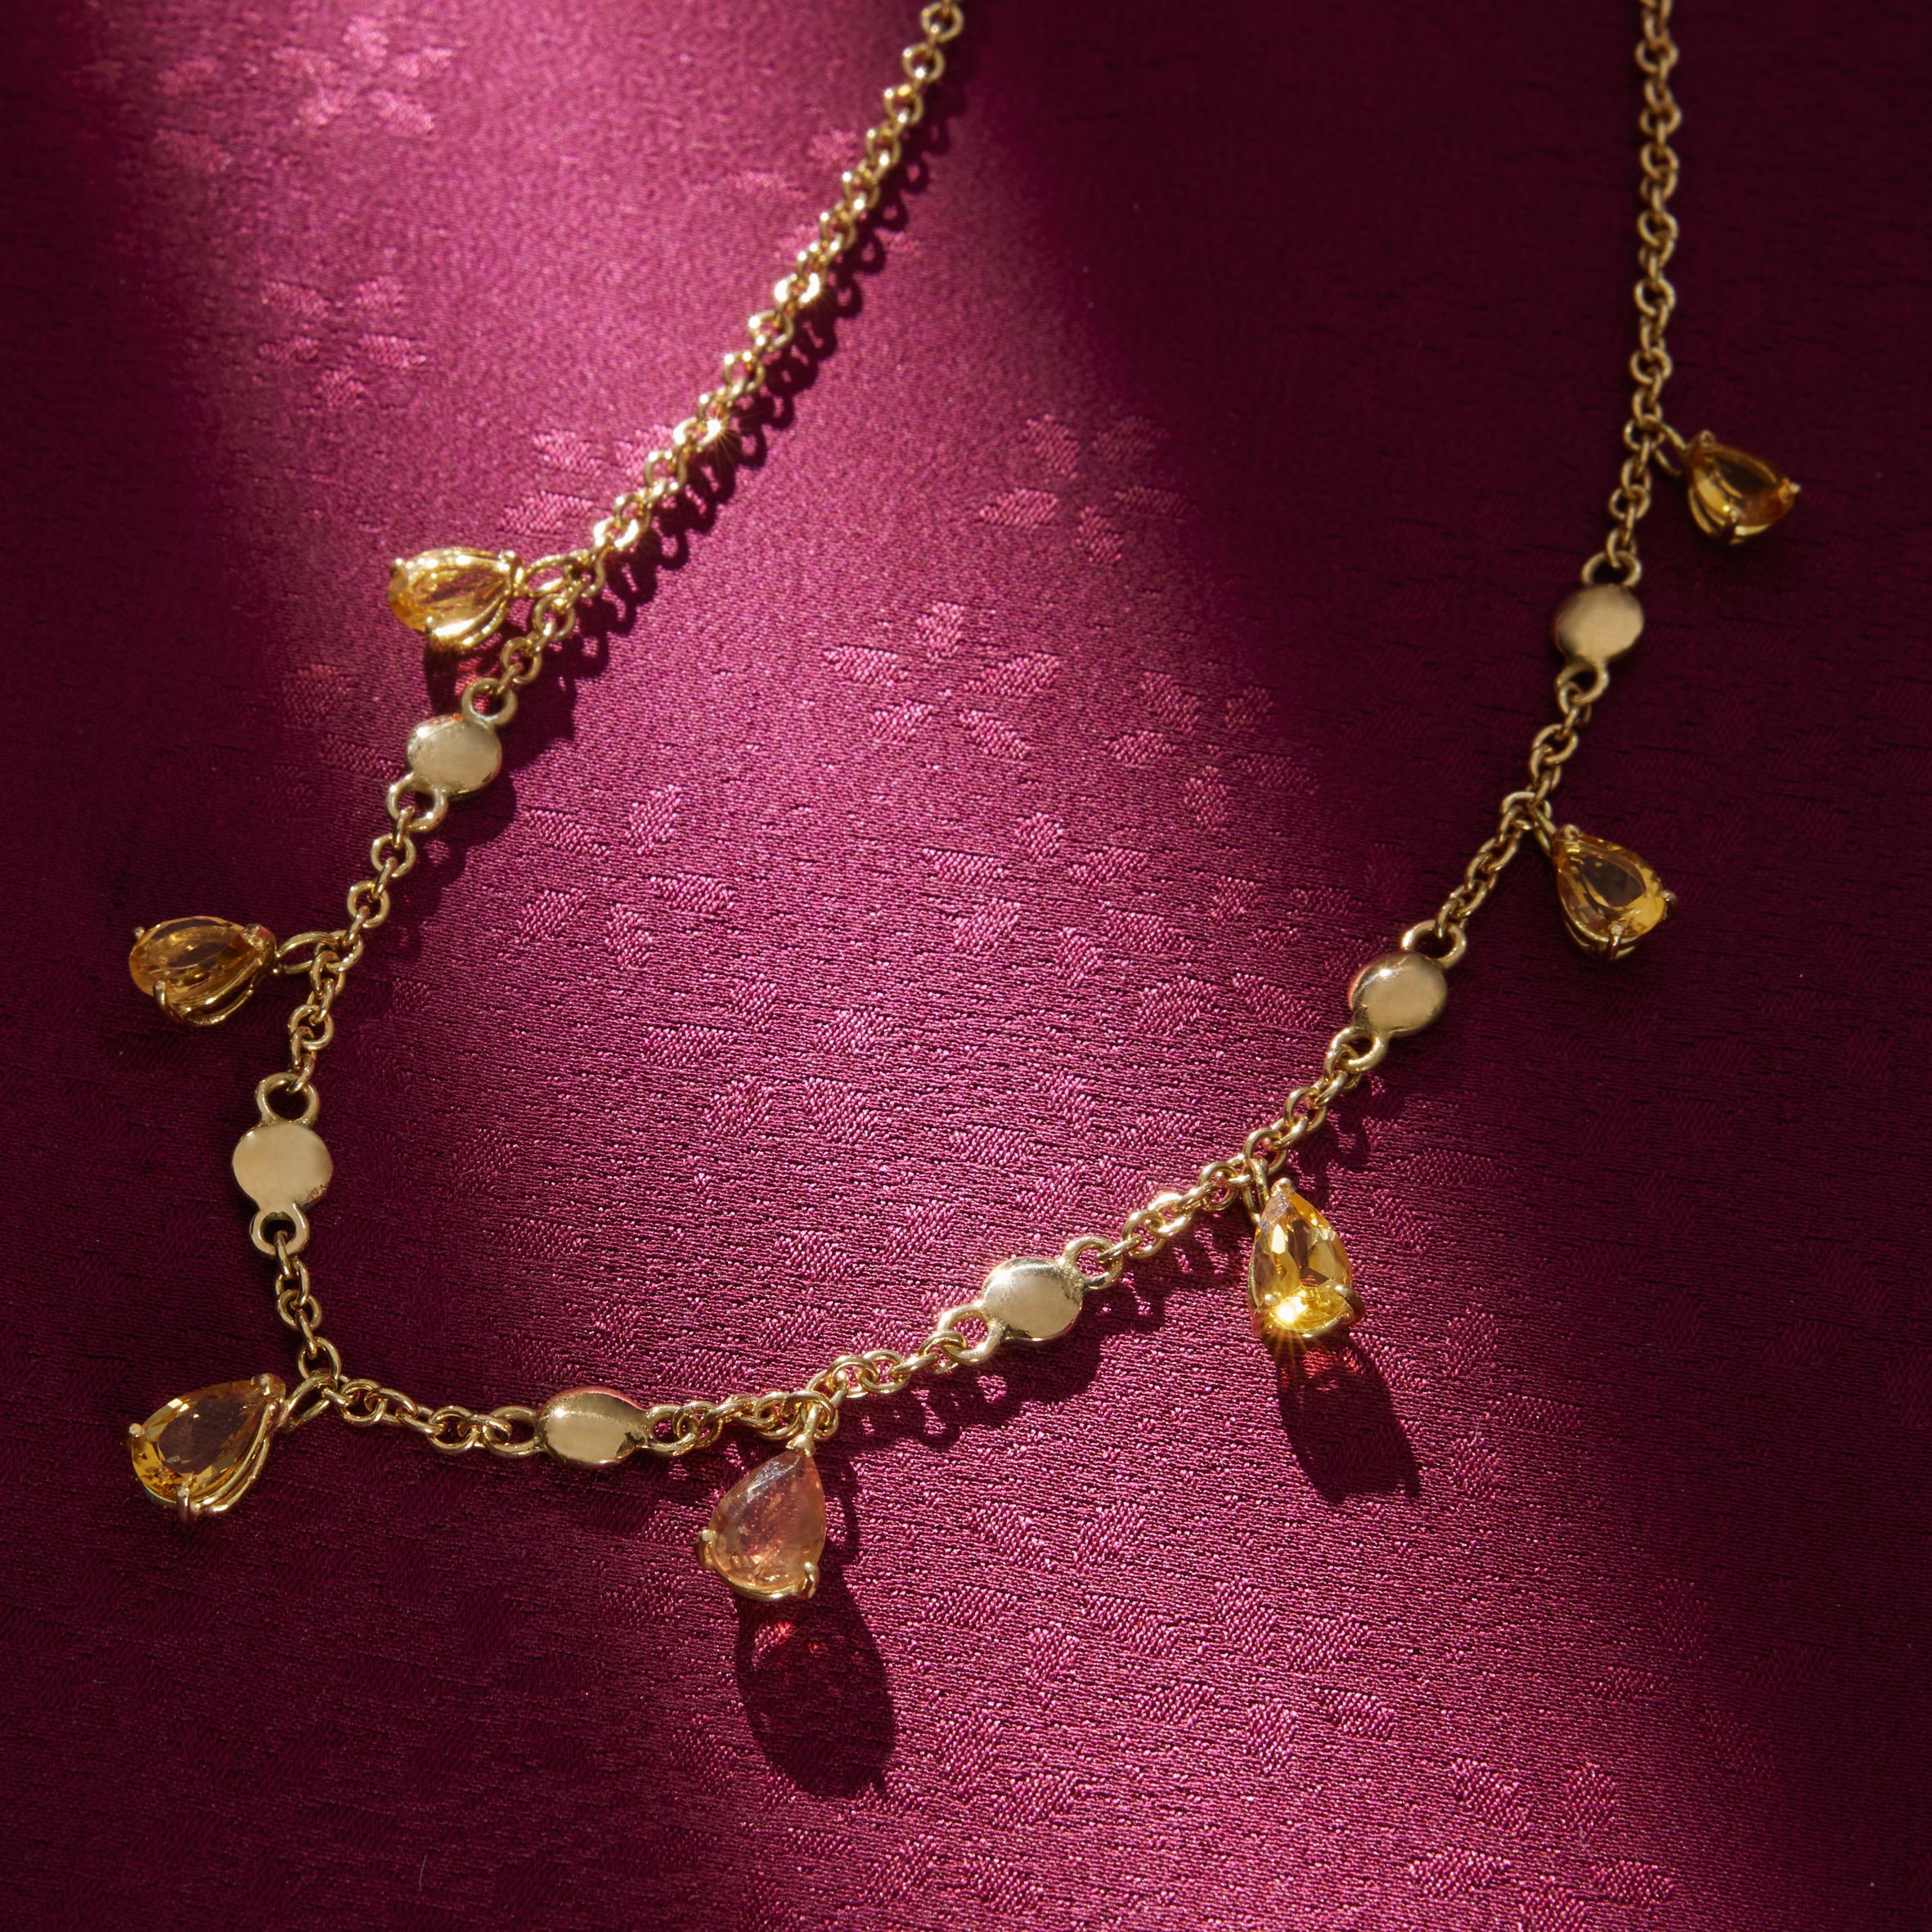 Ce collier de gouttes est entièrement réalisé à la main. La longueur totale est de 45 cm et il est composé de 21gr d'or 18k. Les gouttes de safran jaune alternent avec des lentilles d'or.
Tous les bijoux de Giulia Colussi sont neufs et n'ont jamais